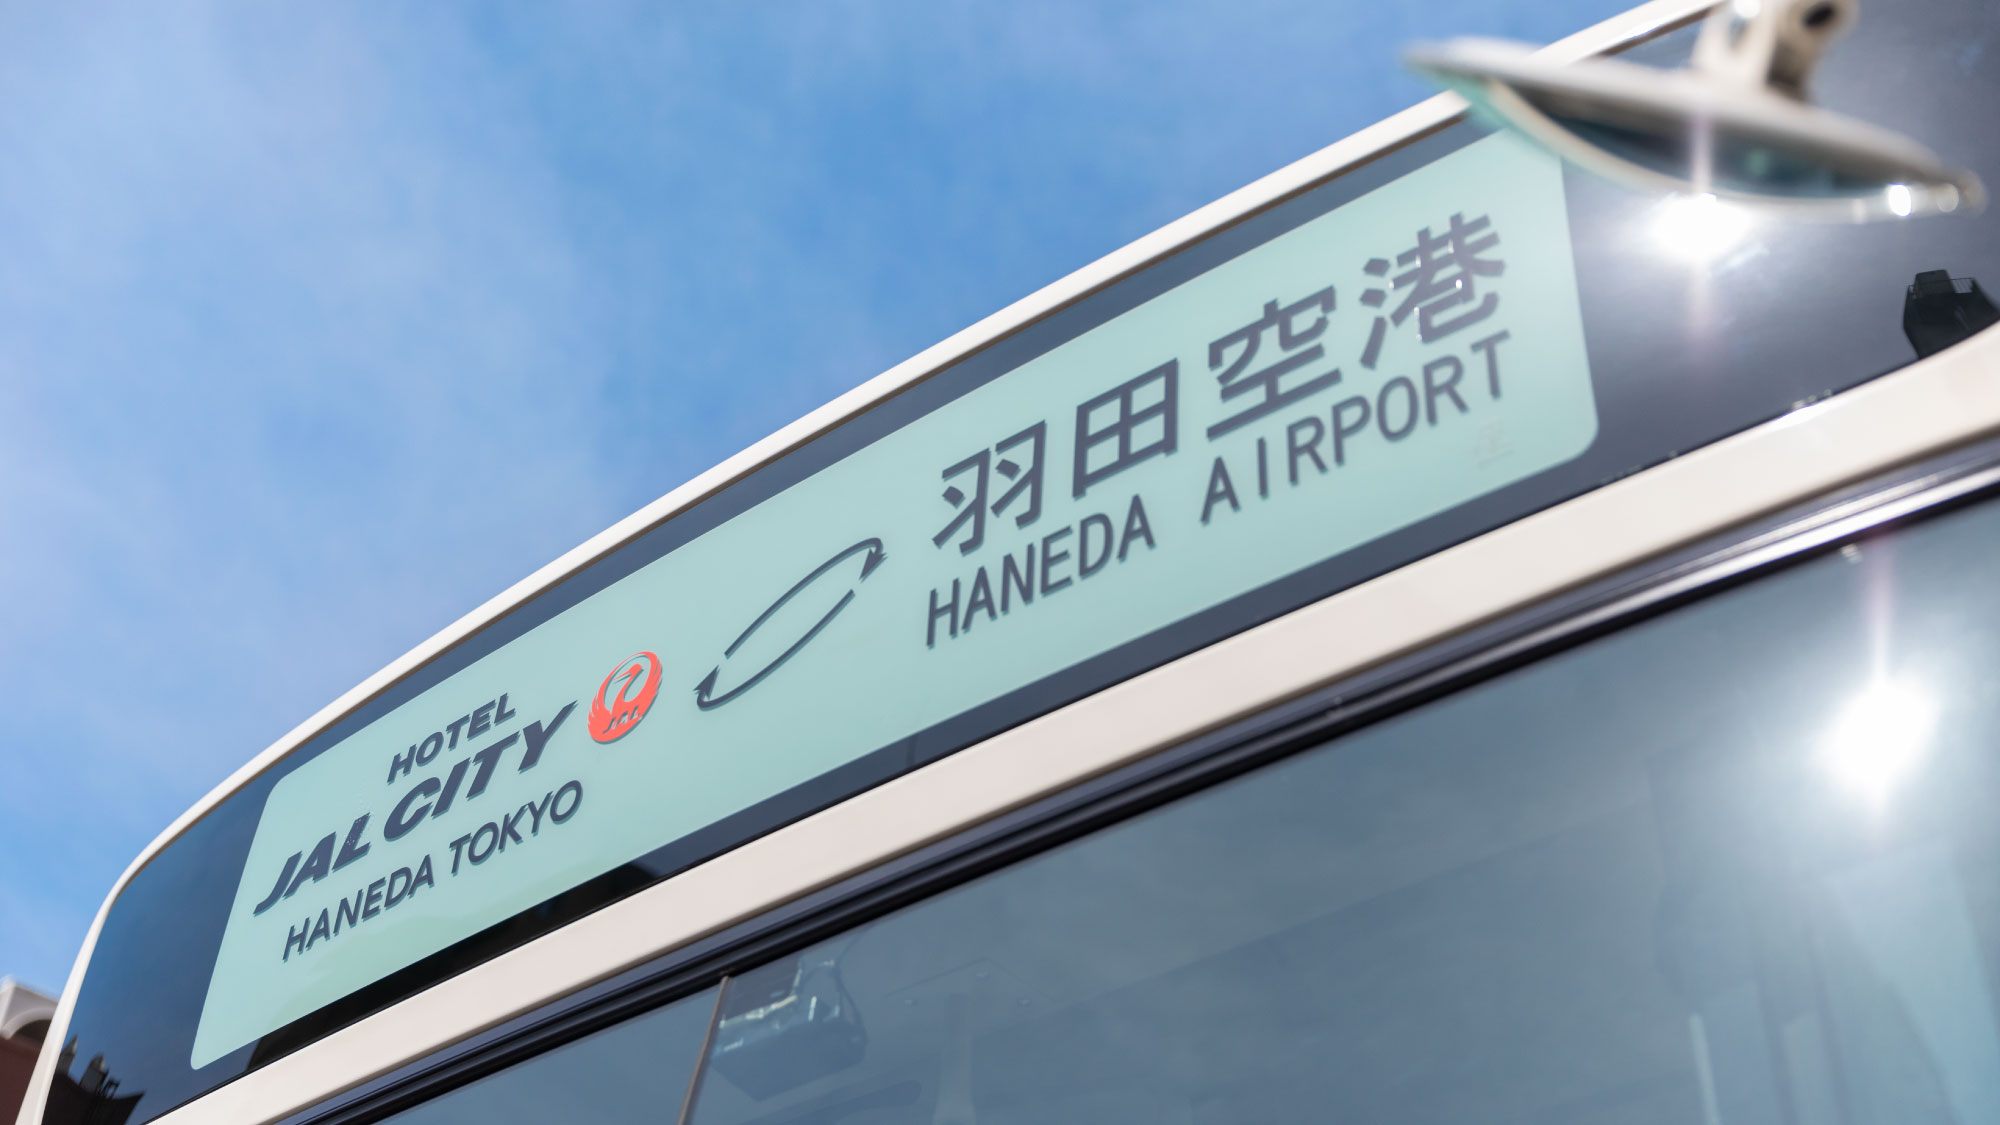 ホテルと羽田空港を結ぶご予約不要の「無料シャトルバス」